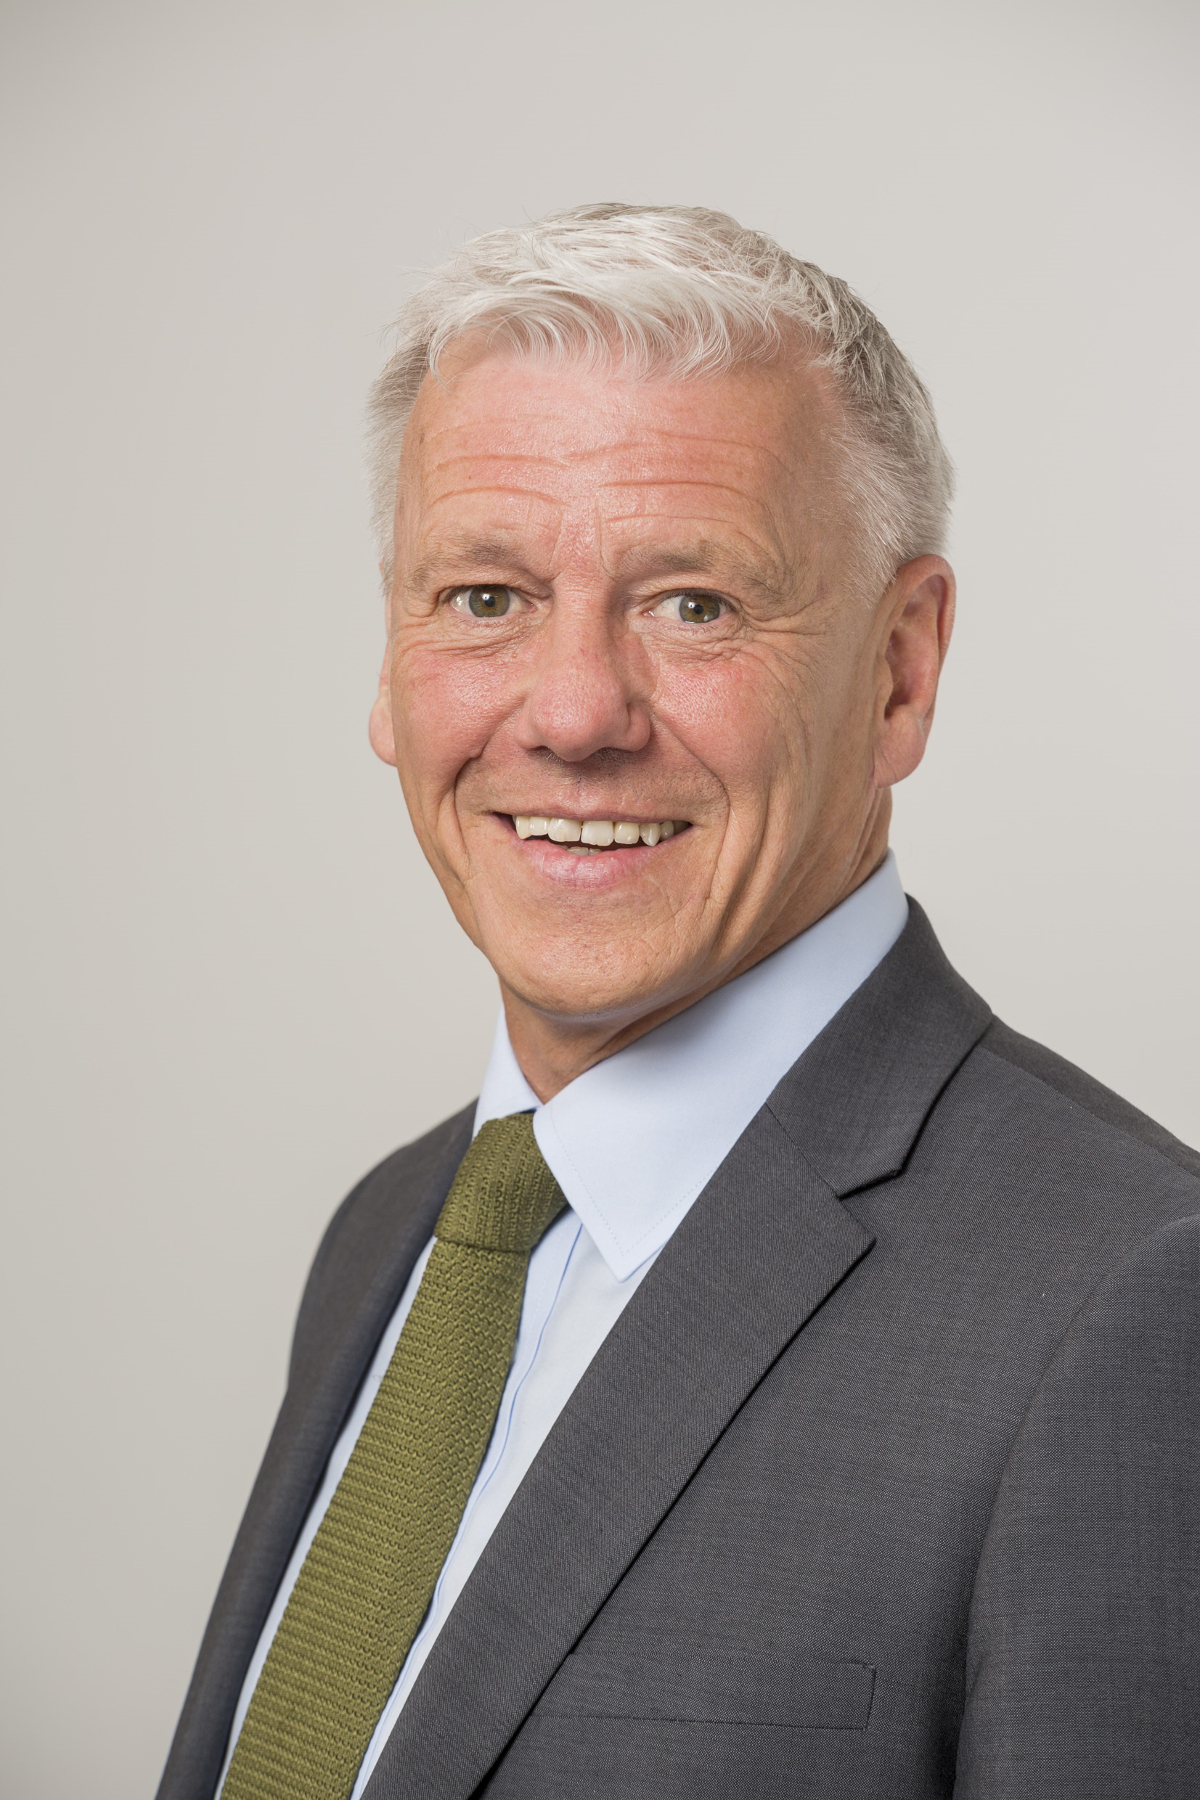 Peter Duff becomes chairman at Blackadders